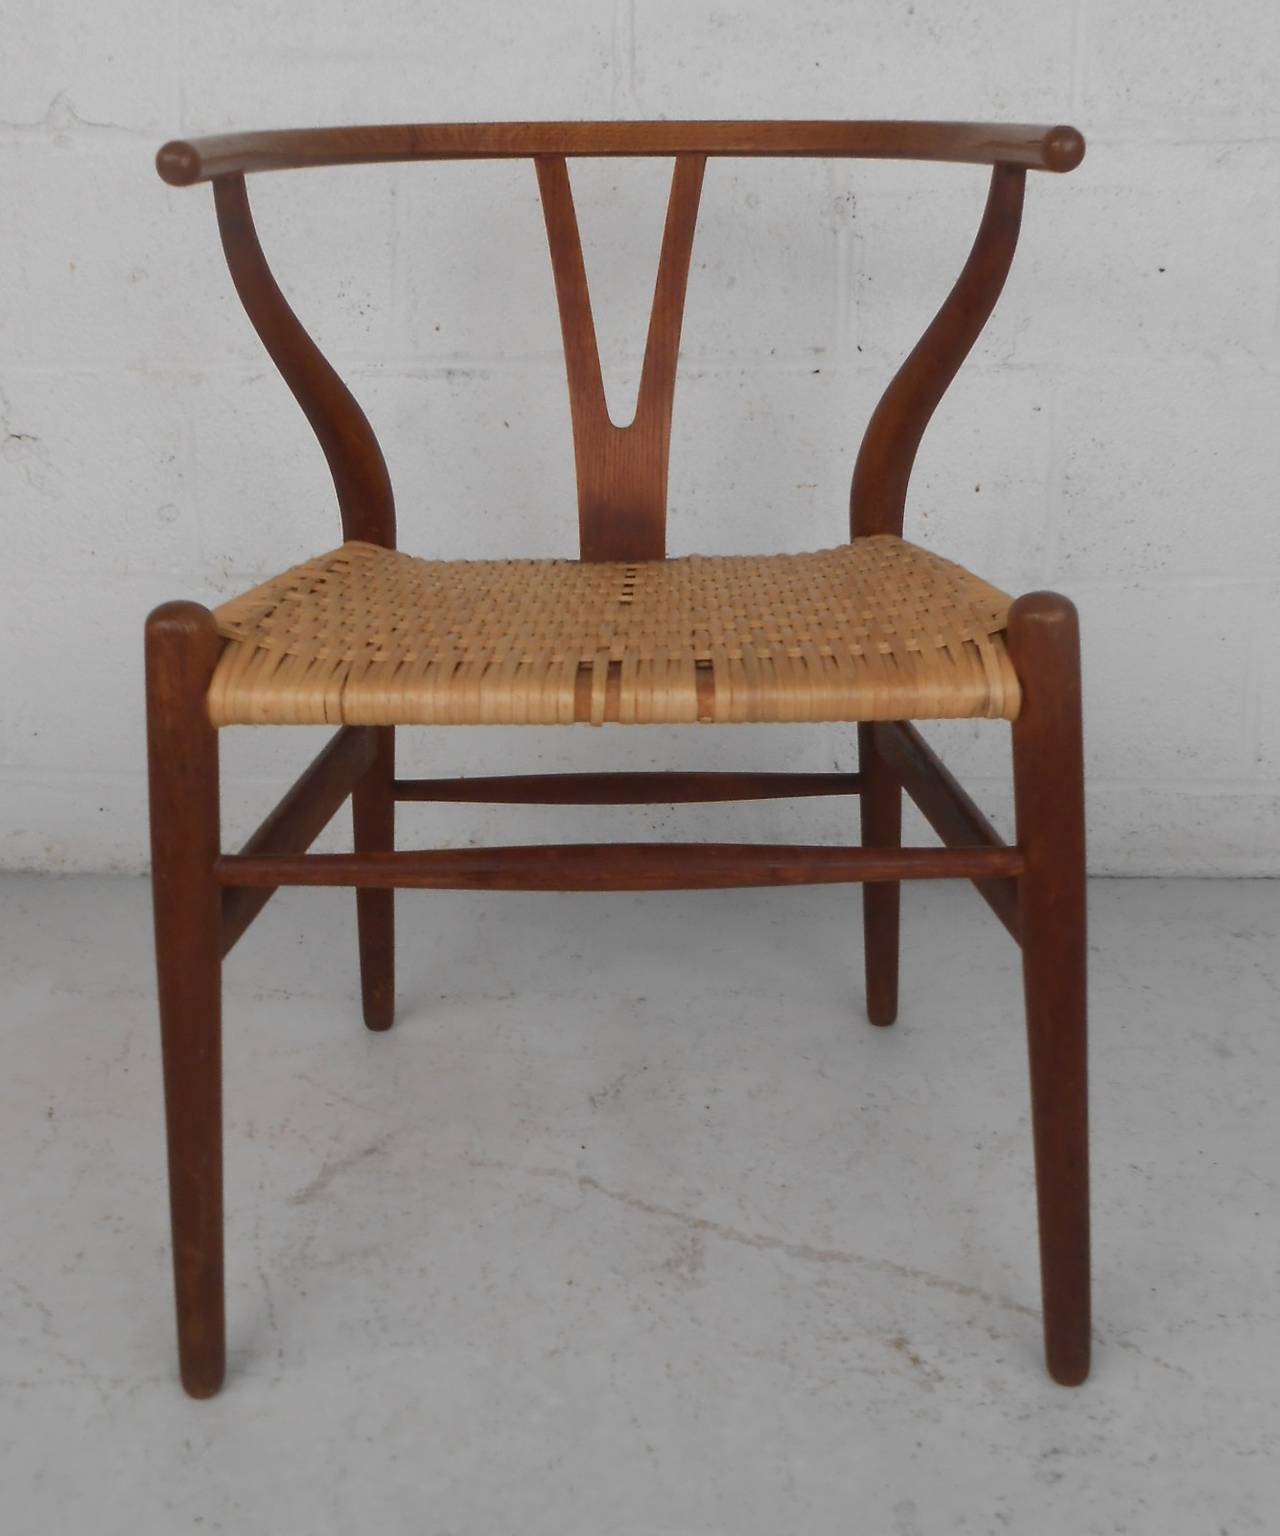 Hans Wegner Wishbone Chair For Sale at 1stdibs